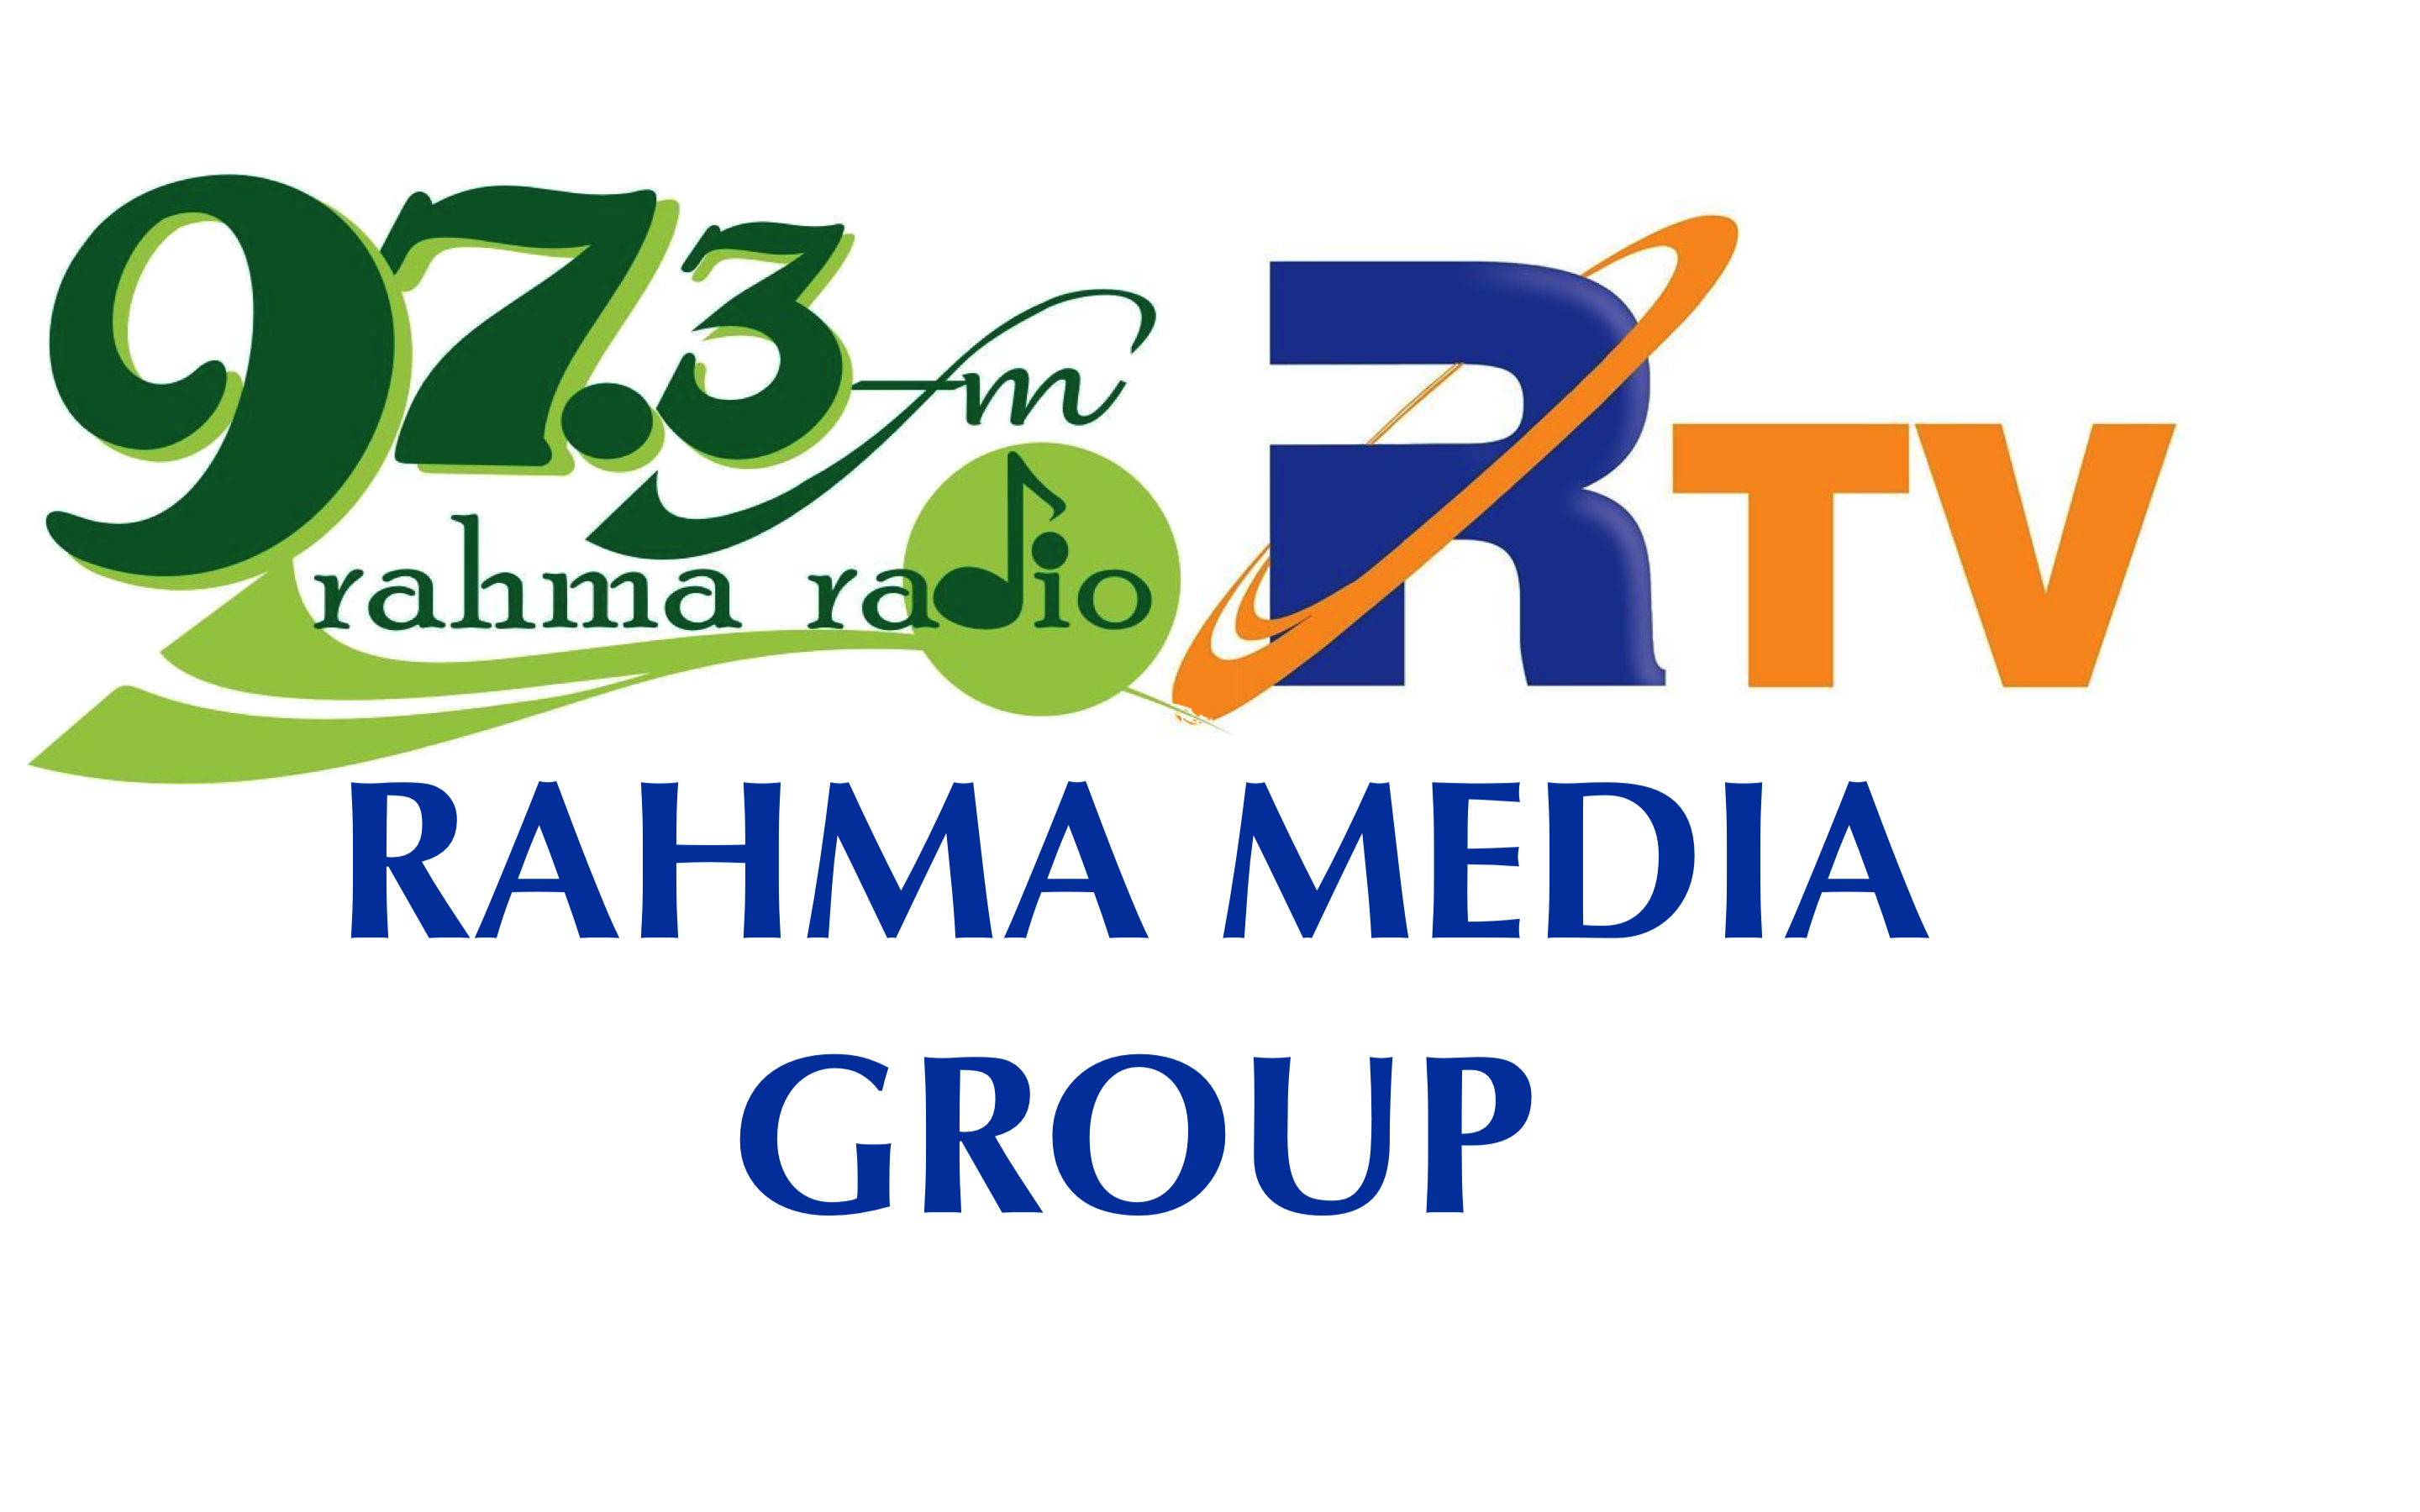 RAHMA MEDIA GROUP